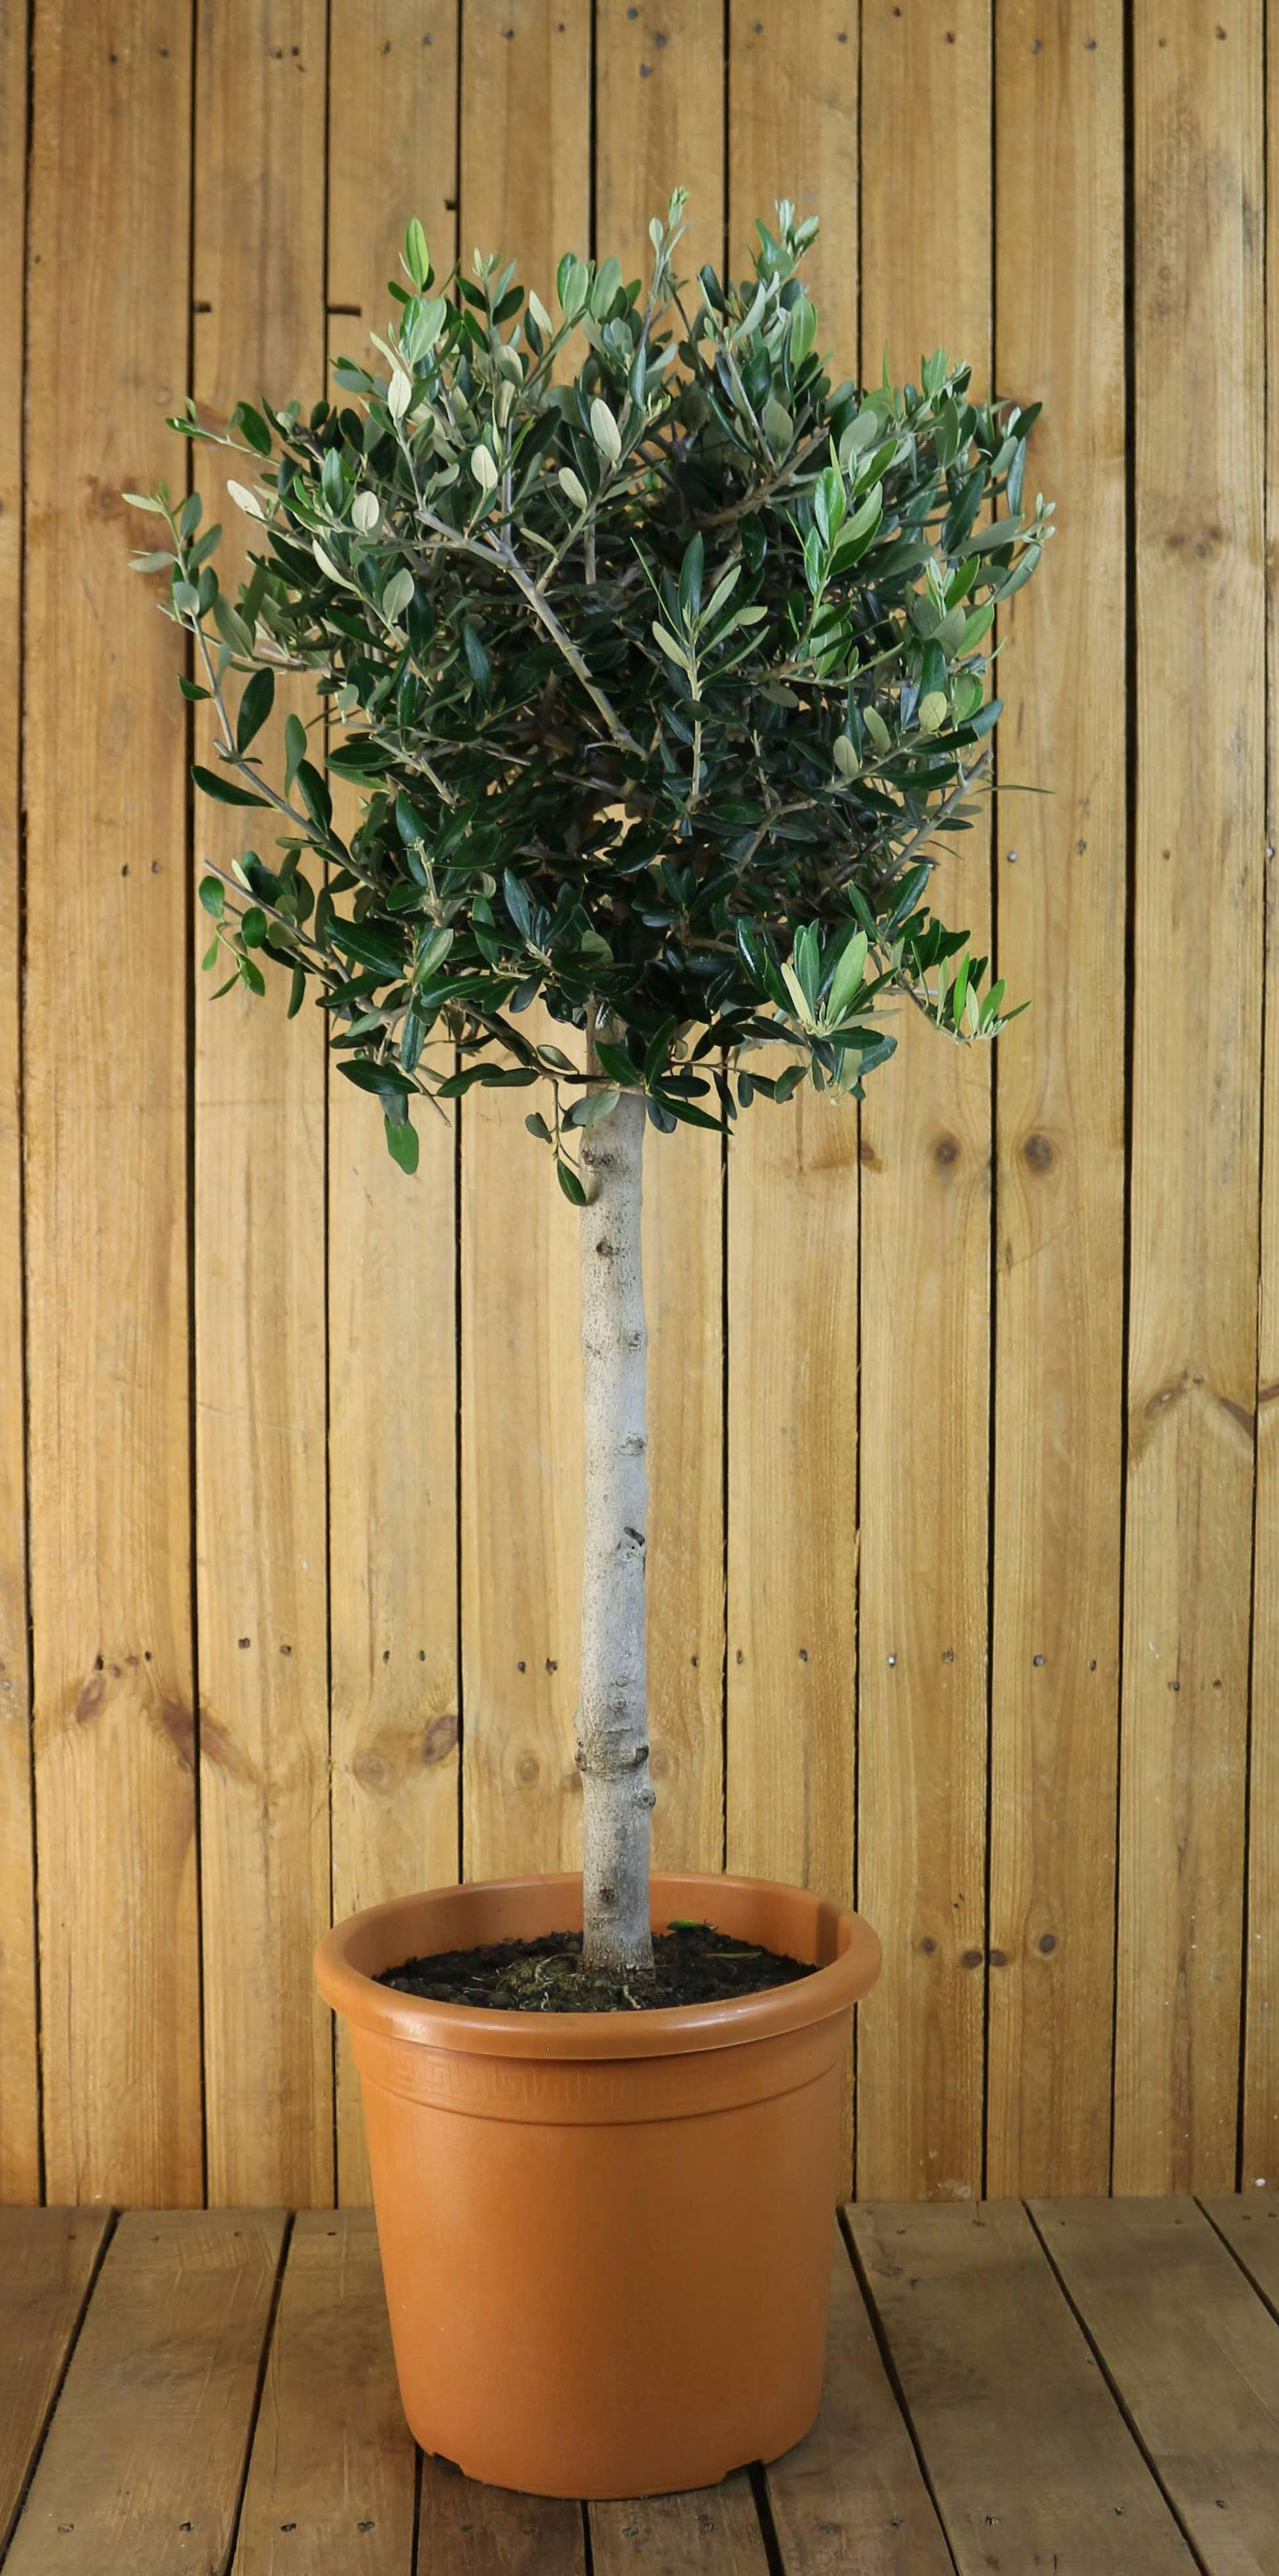 Olivenbaum 